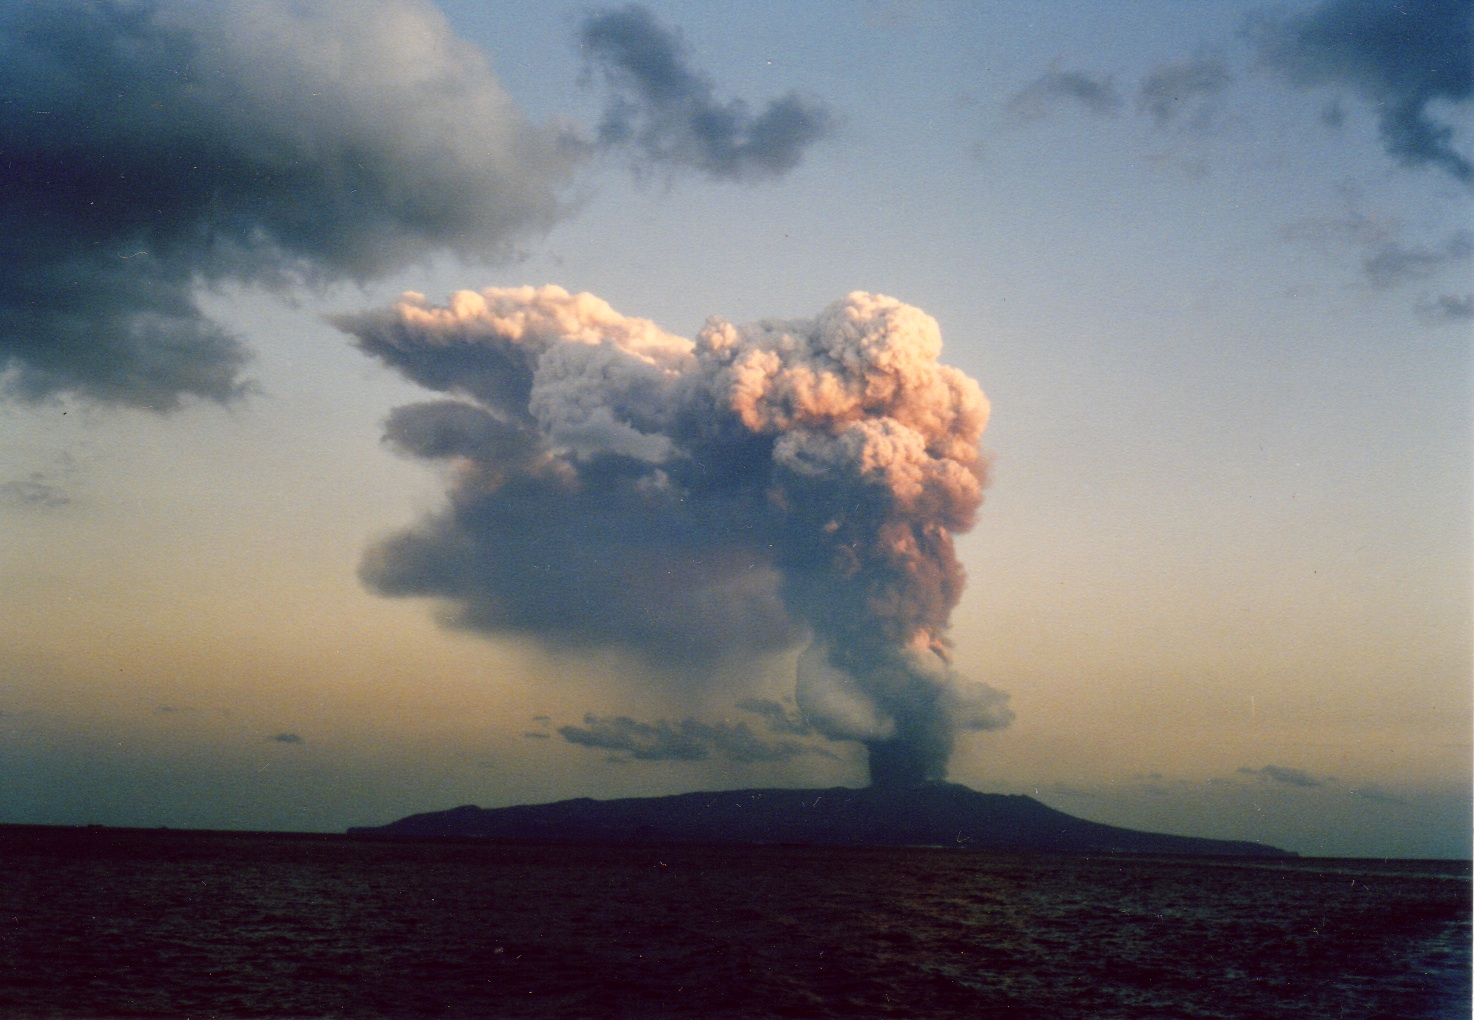 噴火により噴煙が上がっている様子を捉えた写真